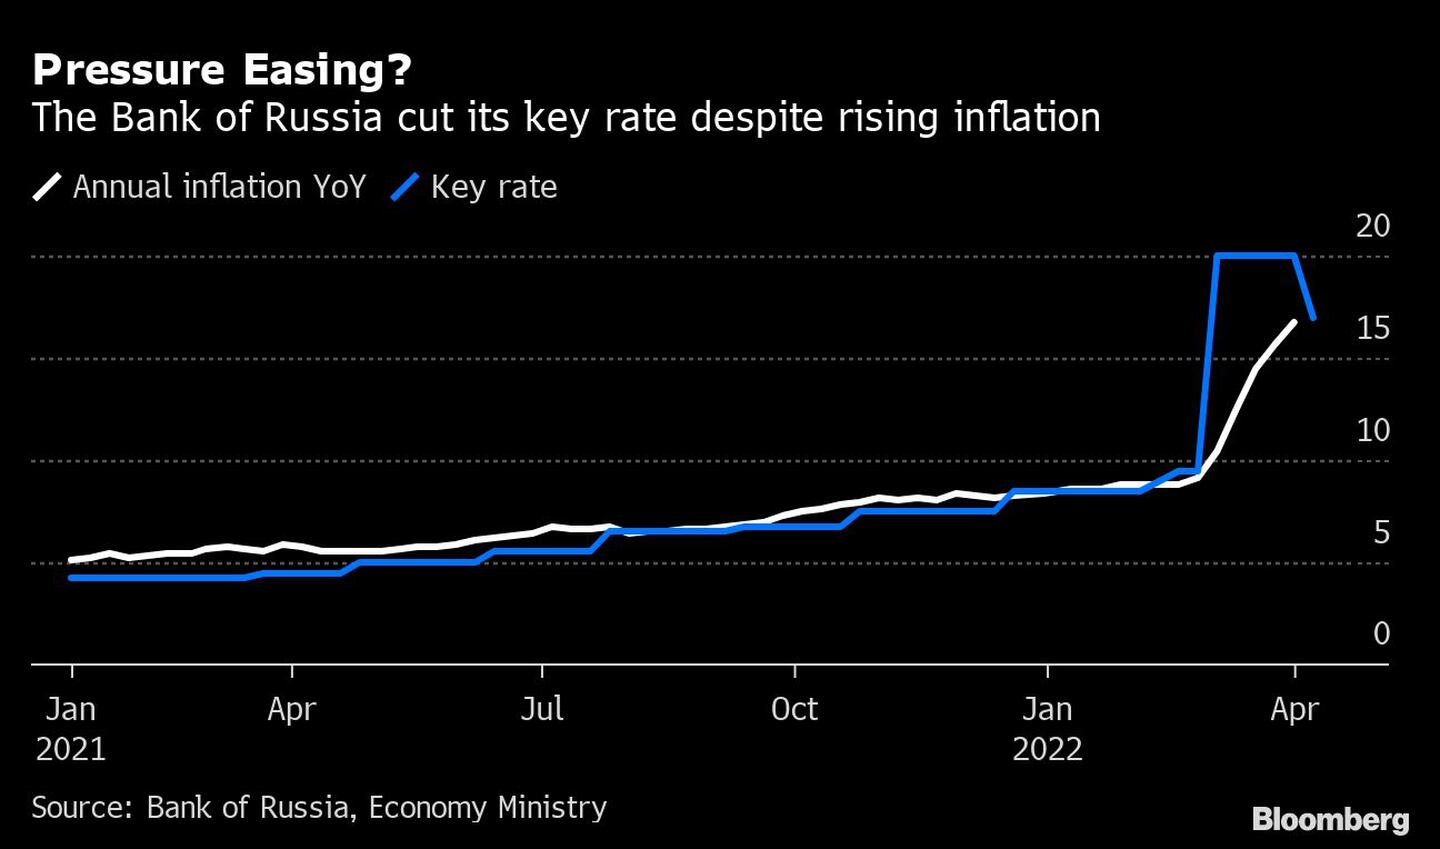 El Banco de Rusia recortó su tasa de interés clave pese a la creciente inflacióndfd